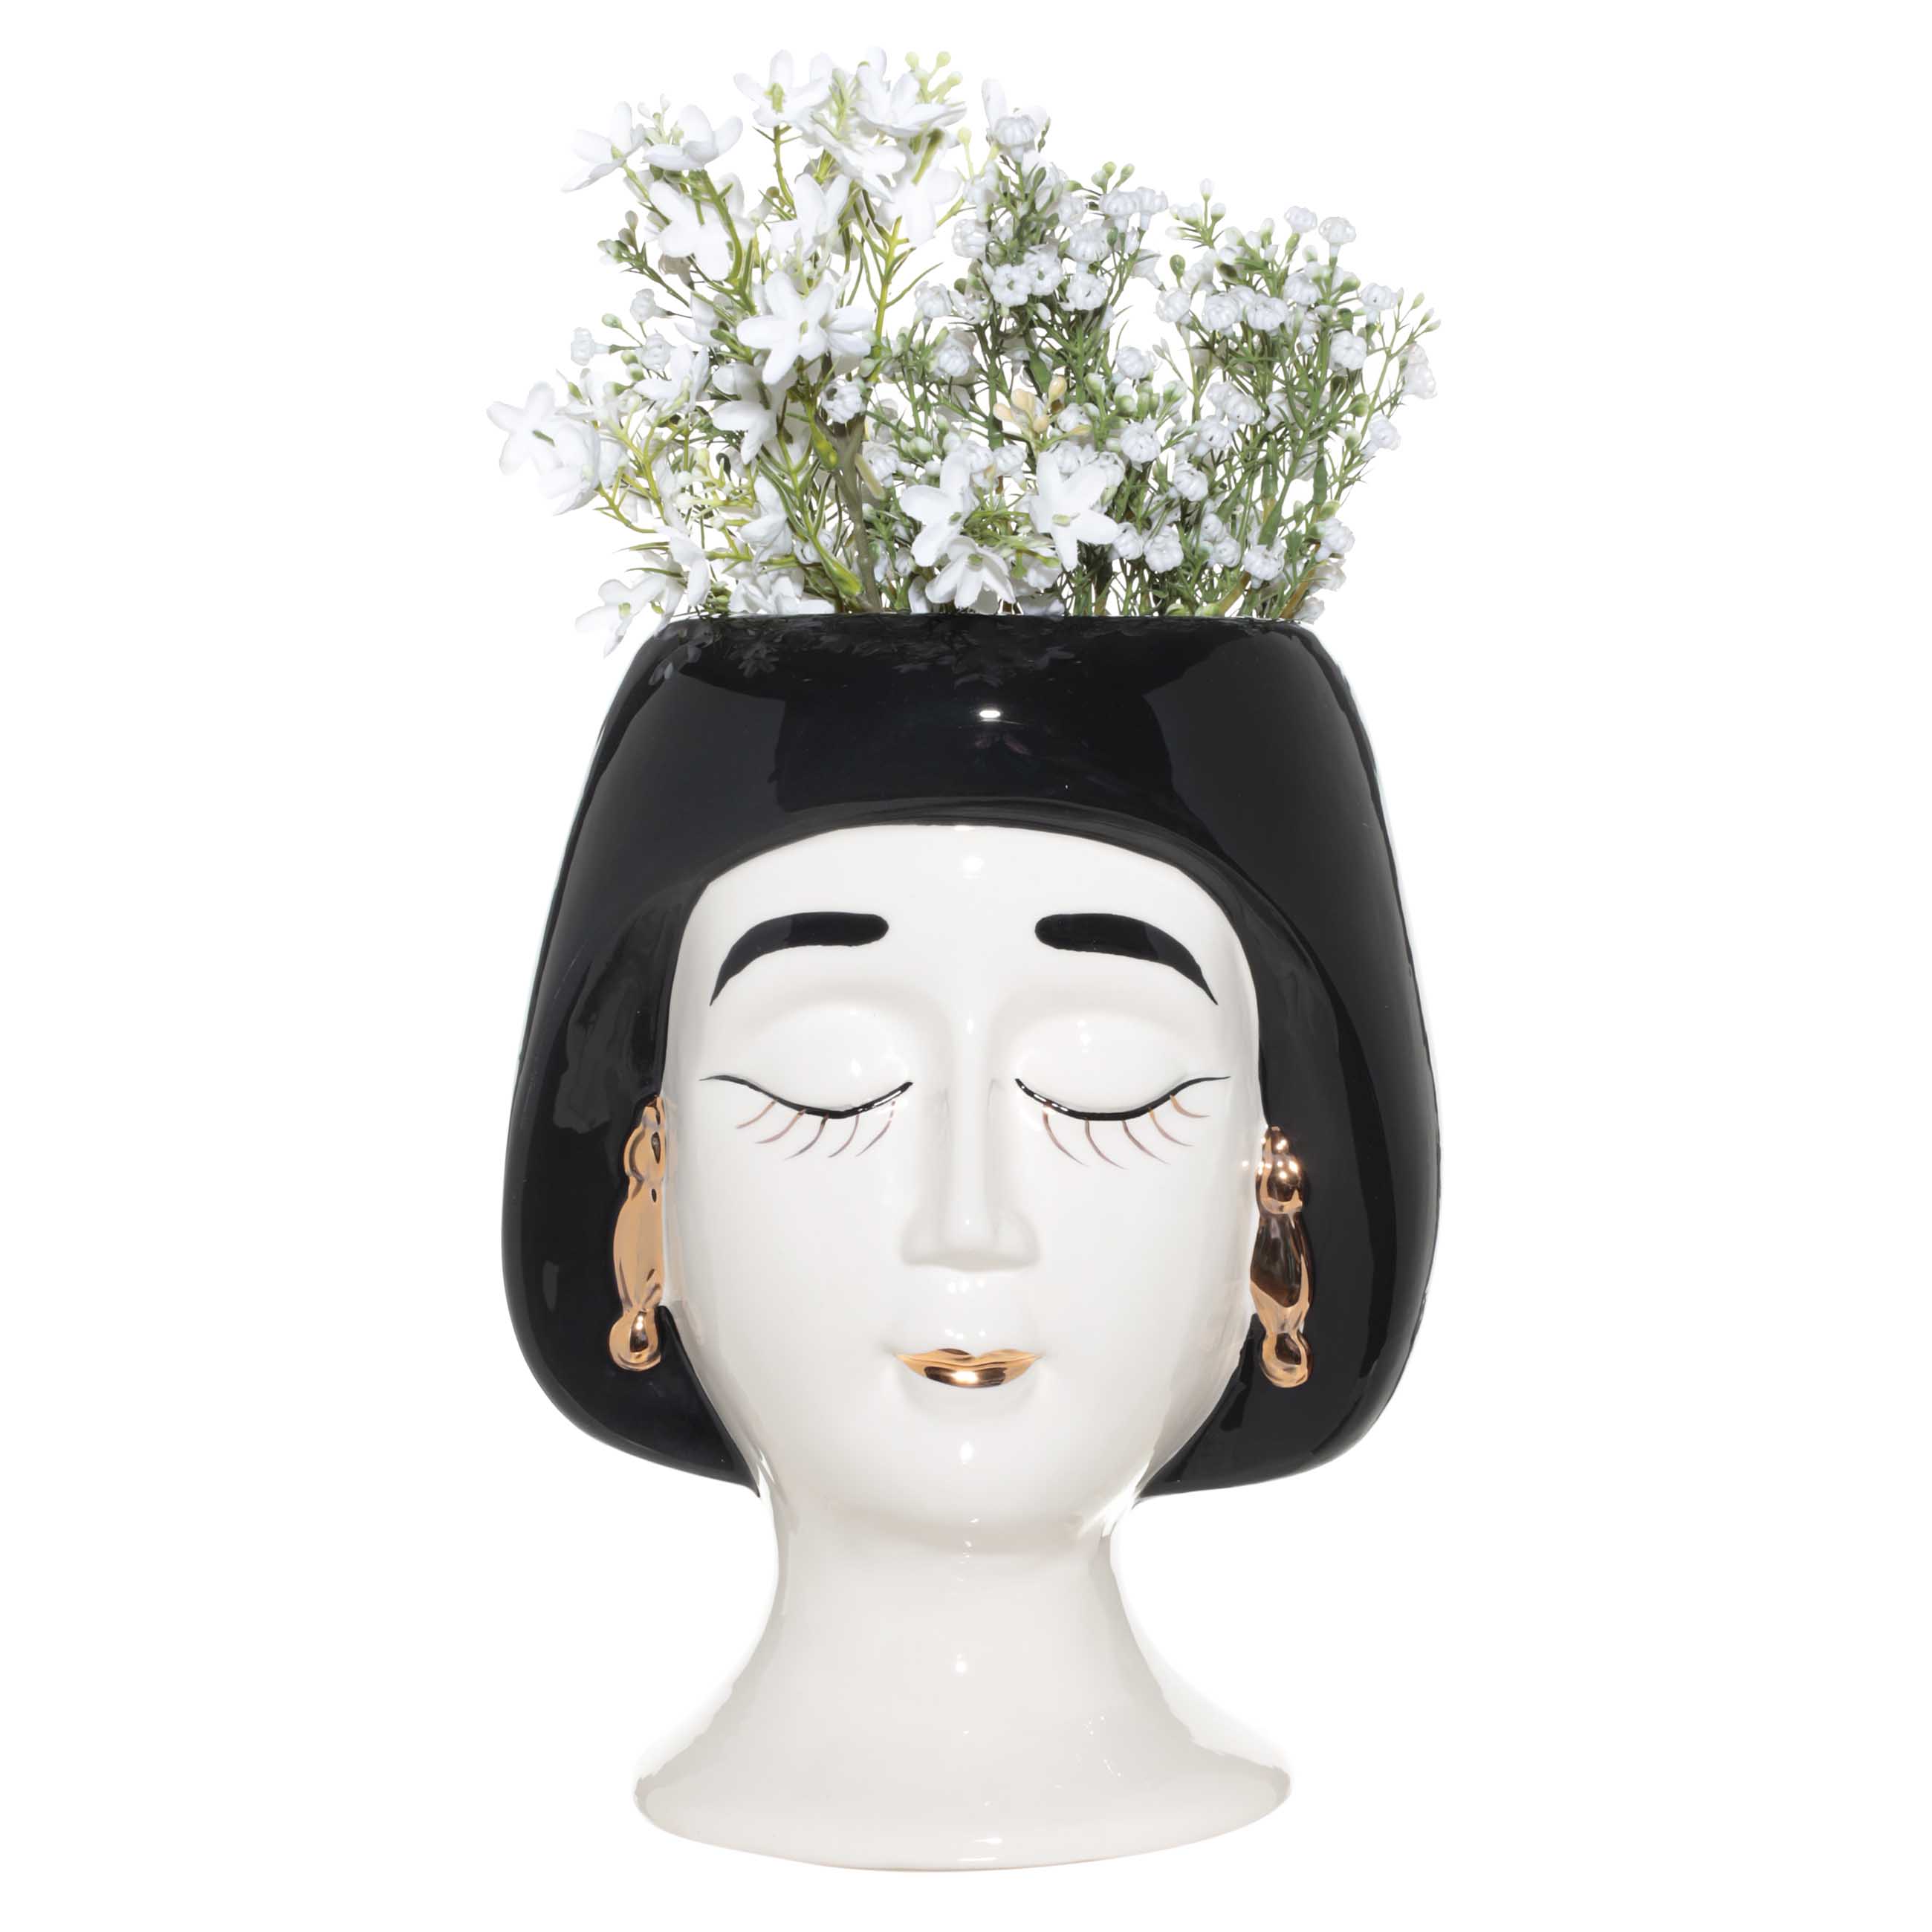 Ваза для цветов, 30 см, декоративная, керамика, бело-черная, Дама в сережках, Girls изображение № 4